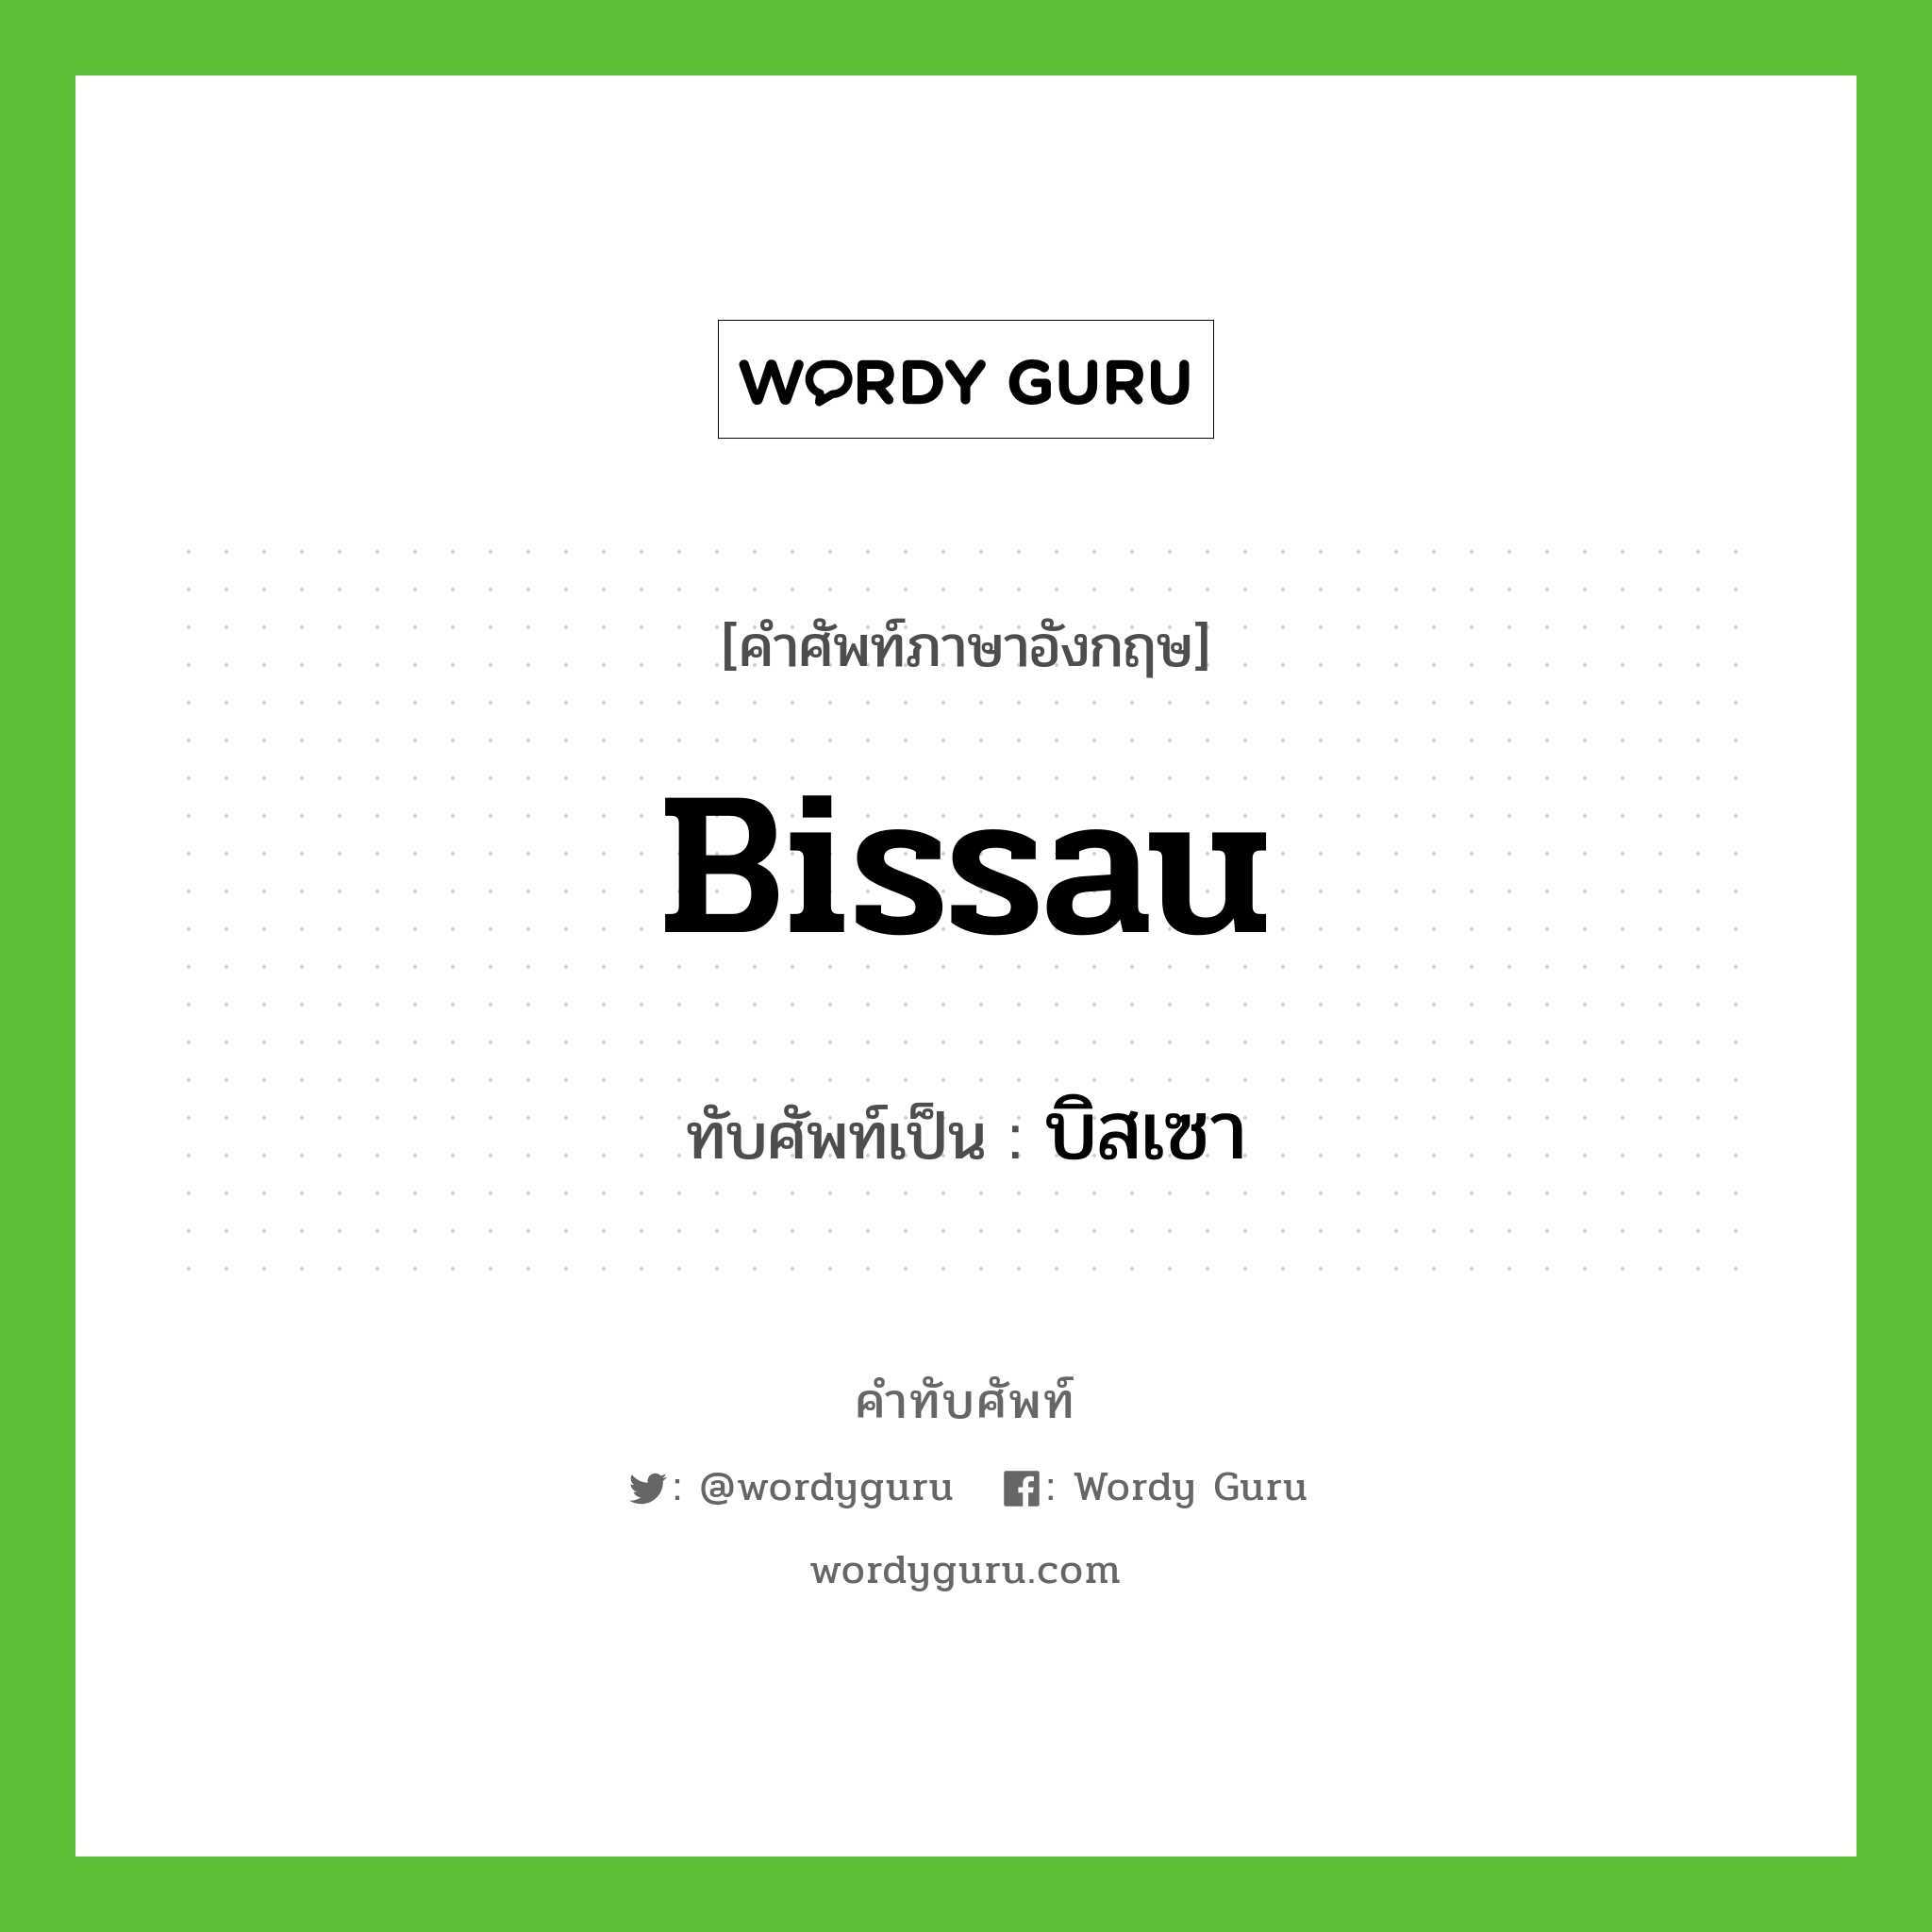 บิสเซา เขียนอย่างไร?, คำศัพท์ภาษาอังกฤษ บิสเซา ทับศัพท์เป็น Bissau